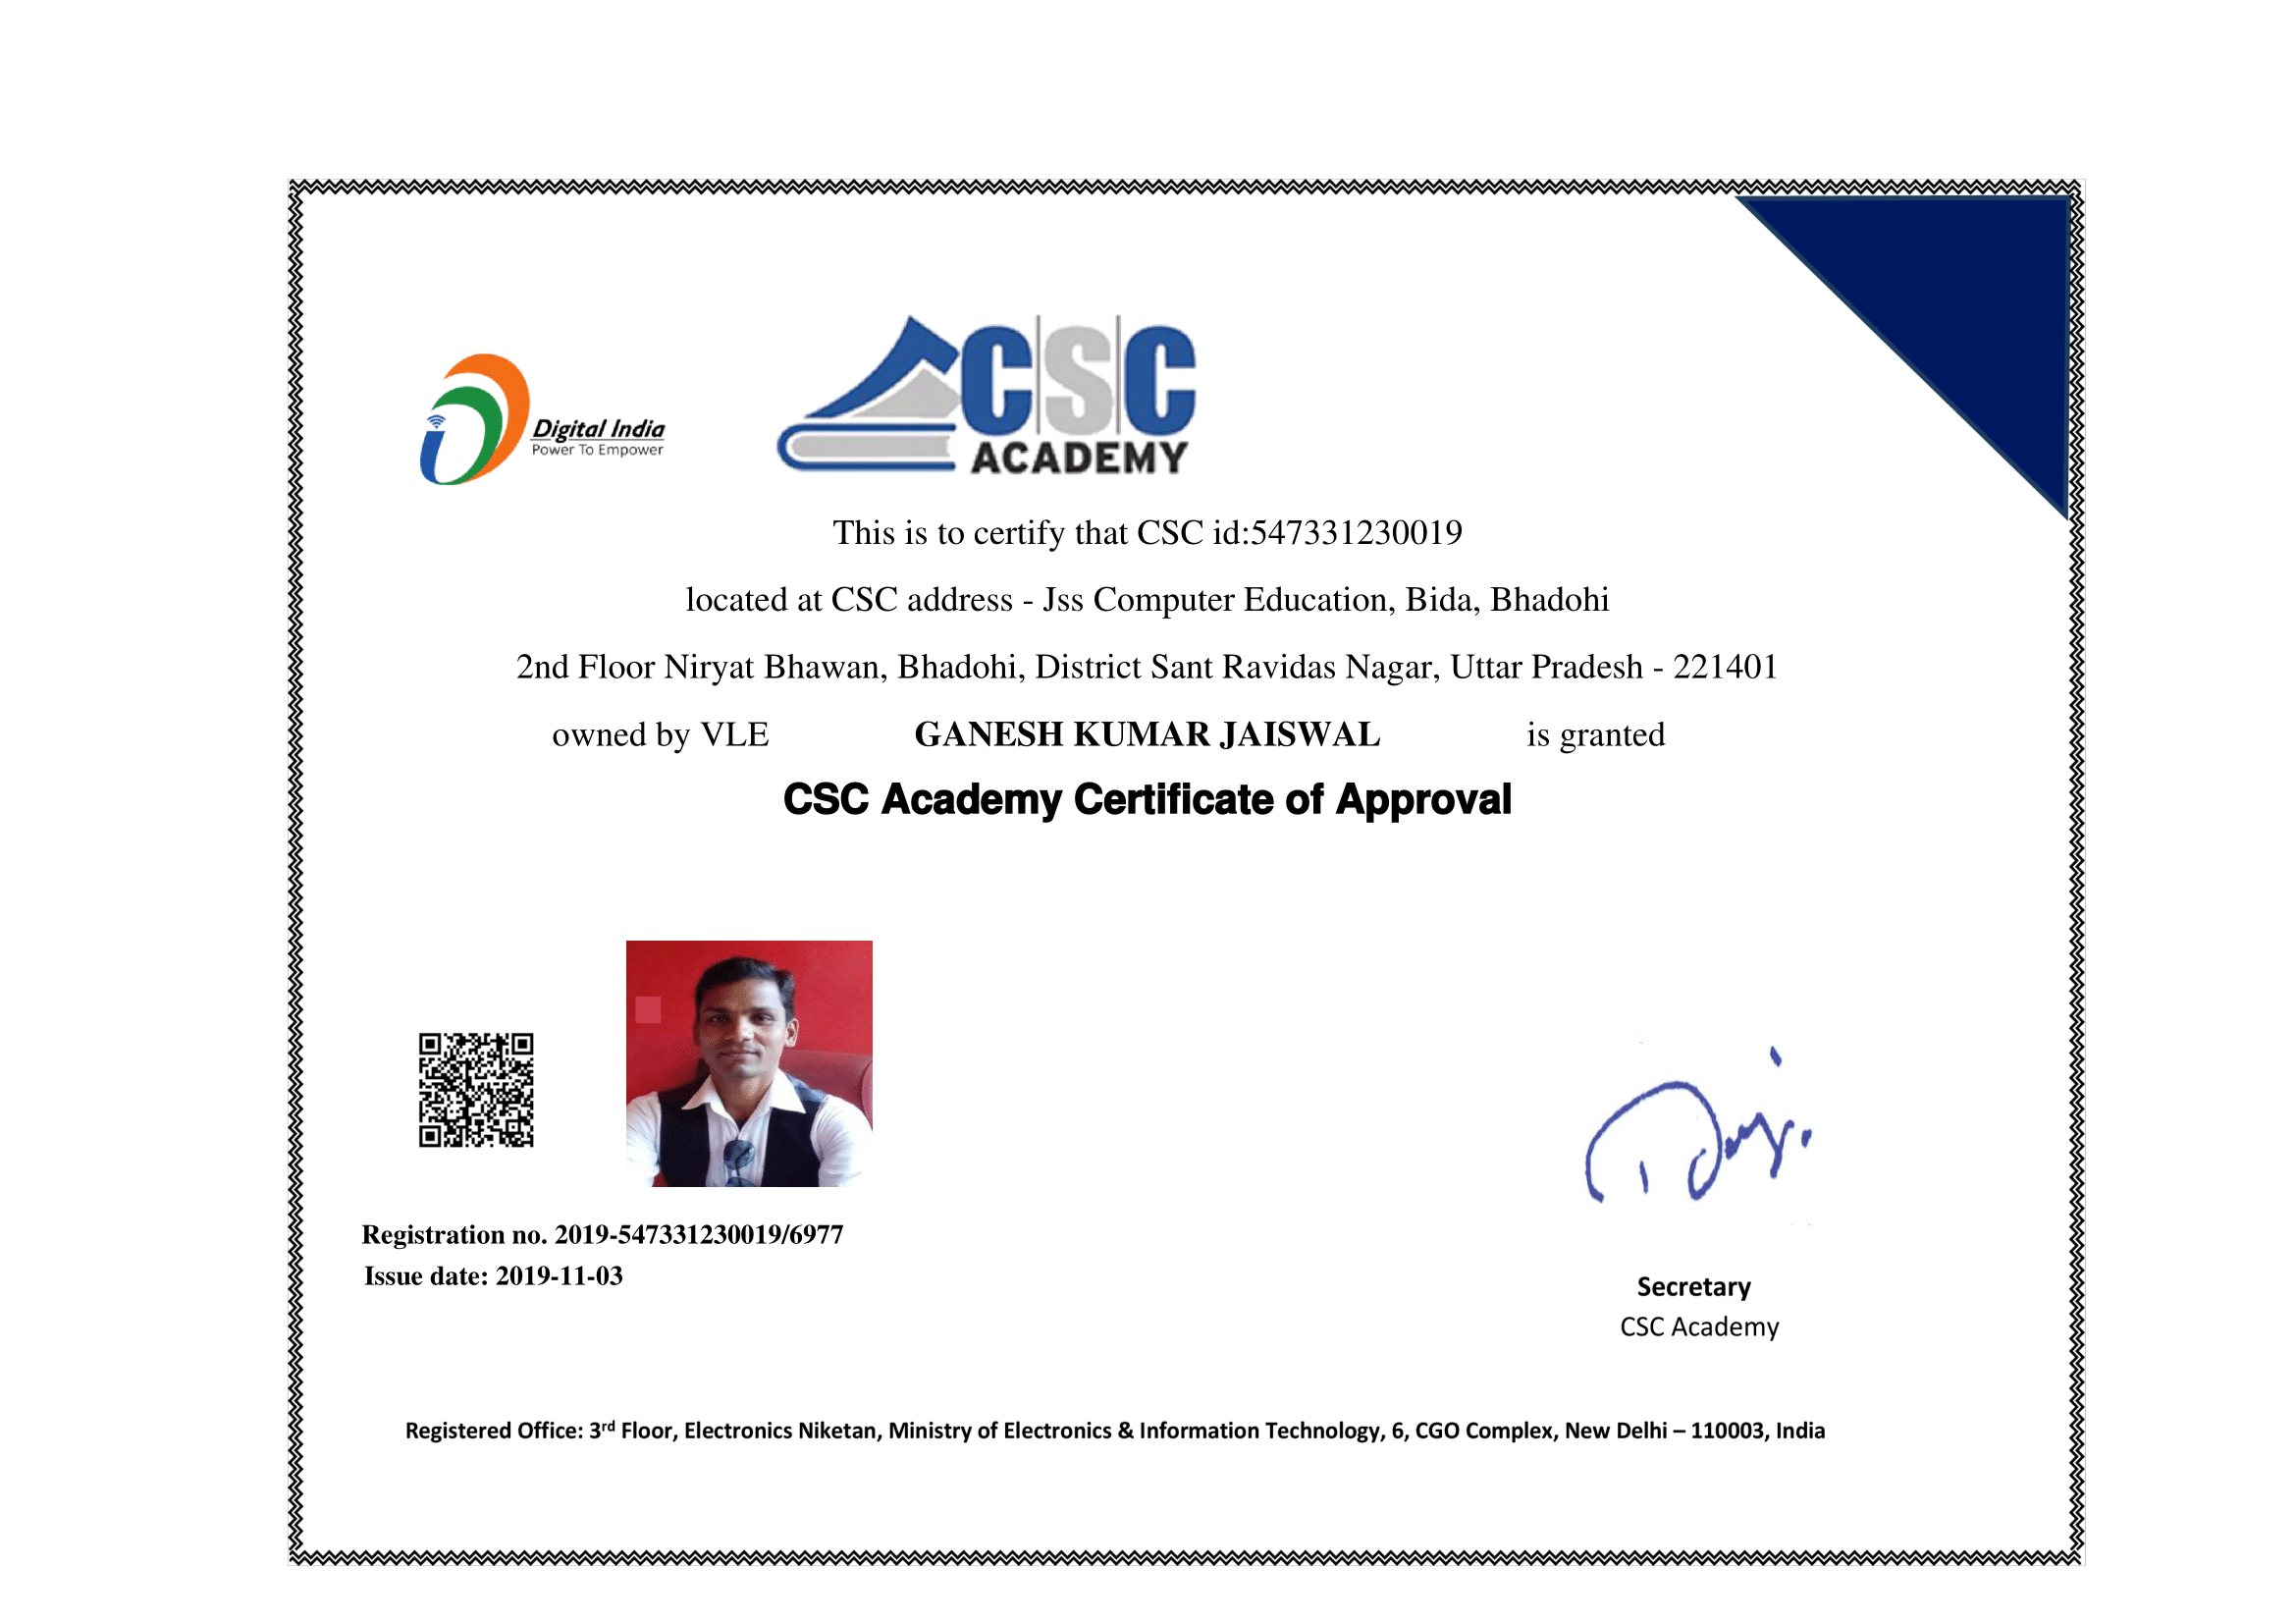 CSC Academy